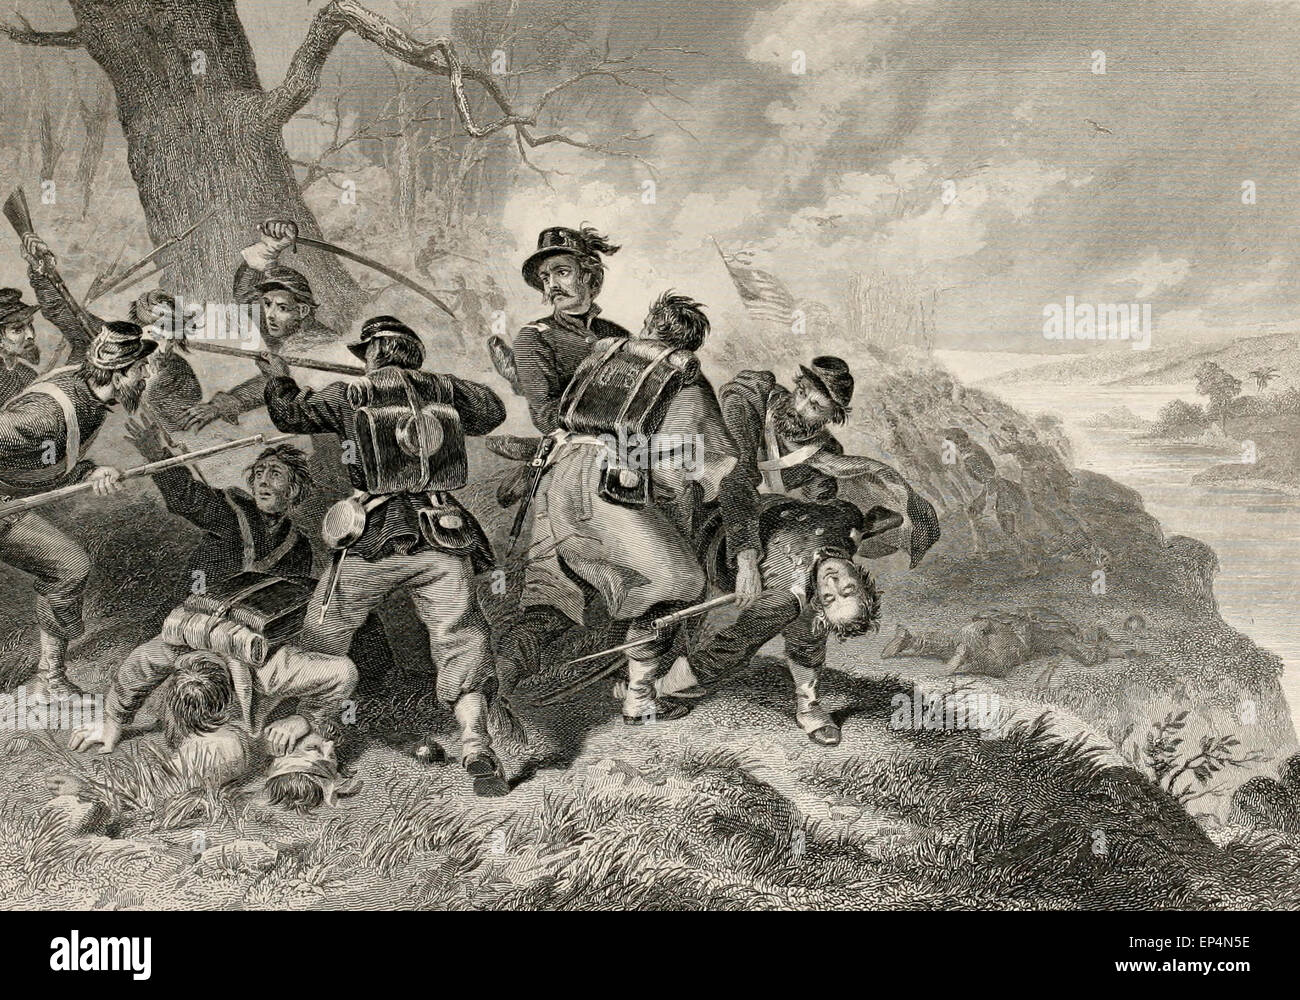 Schlacht von Herbst Bluff, Virginia, 1861. Schlacht des Balls Bluff in Loudoun County, Virginia am 21. Oktober 1861, war einer der frühen Schlachten des amerikanischen Bürgerkriegs in dem Generalmajor George B. McClellan Armee des Potomac (Union) eine demütigende Niederlage erlitten. Stockfoto